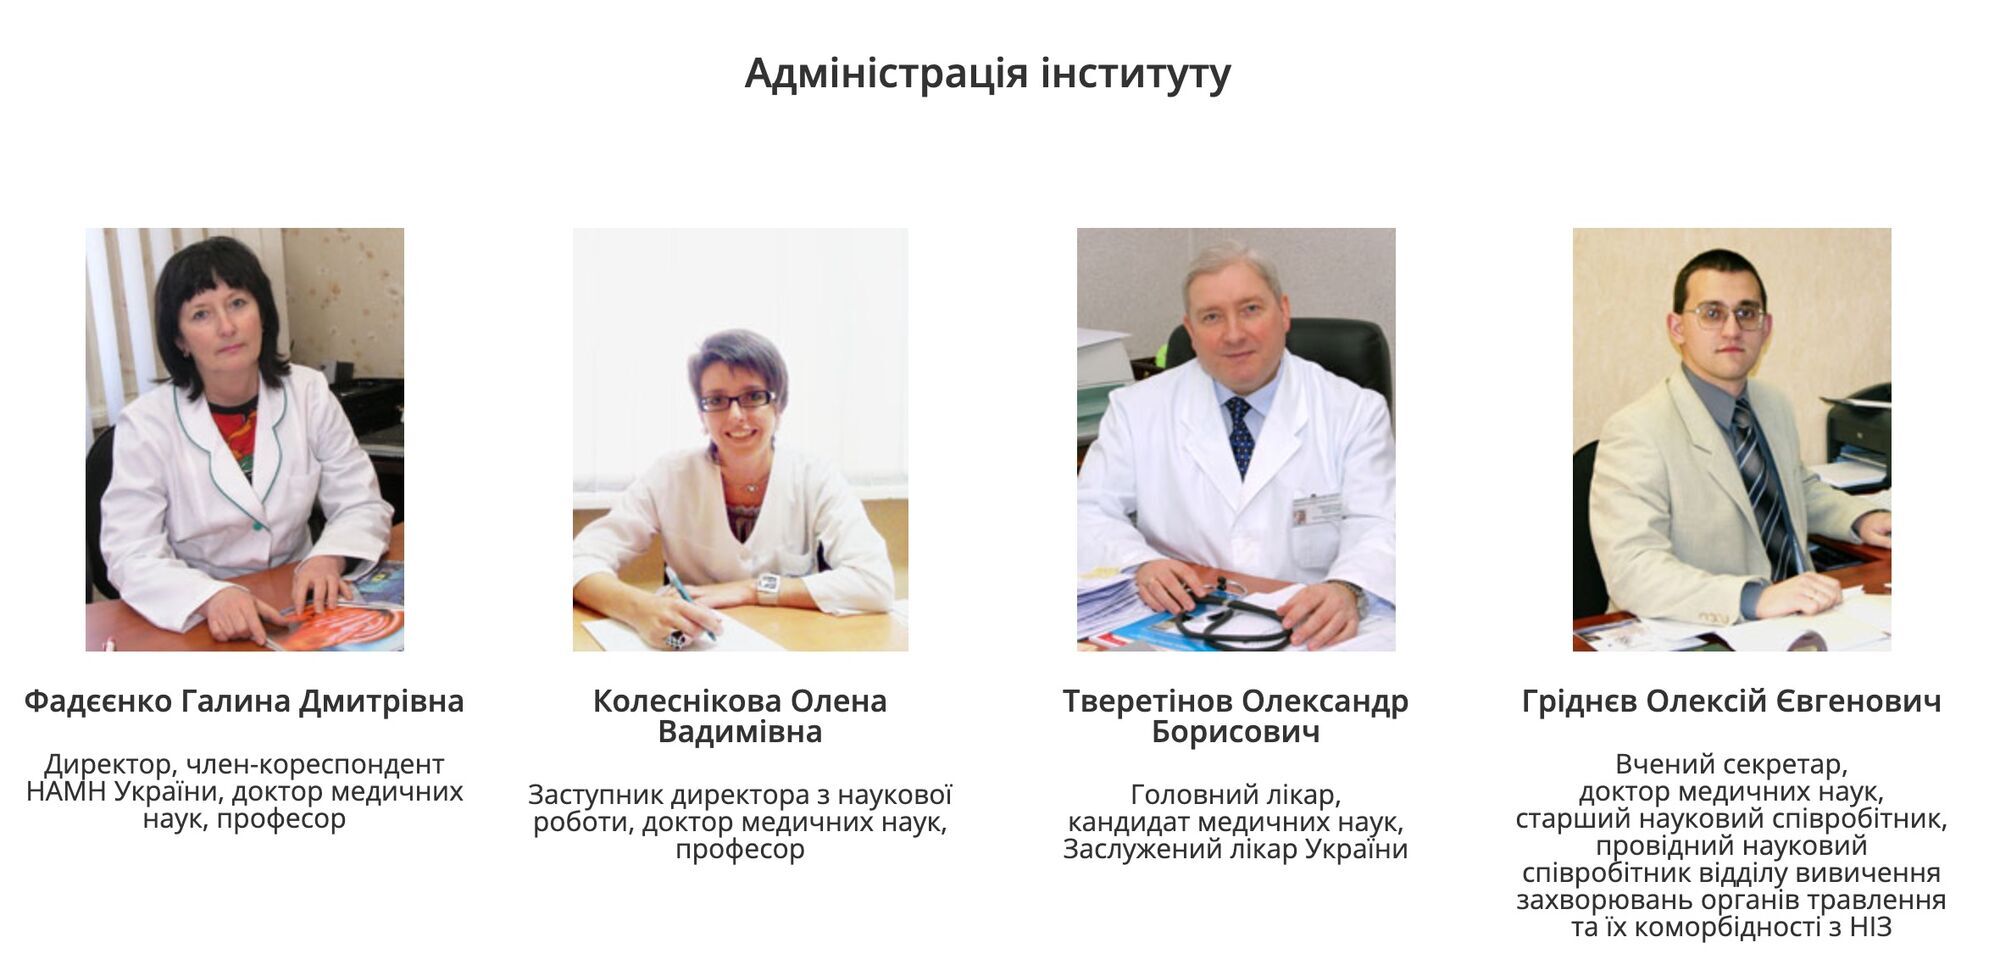 Dyrekcja Zakładu Państwowego „Narodowy Instytut Terapii im. L.T. Małe NAMS Ukrainy” 